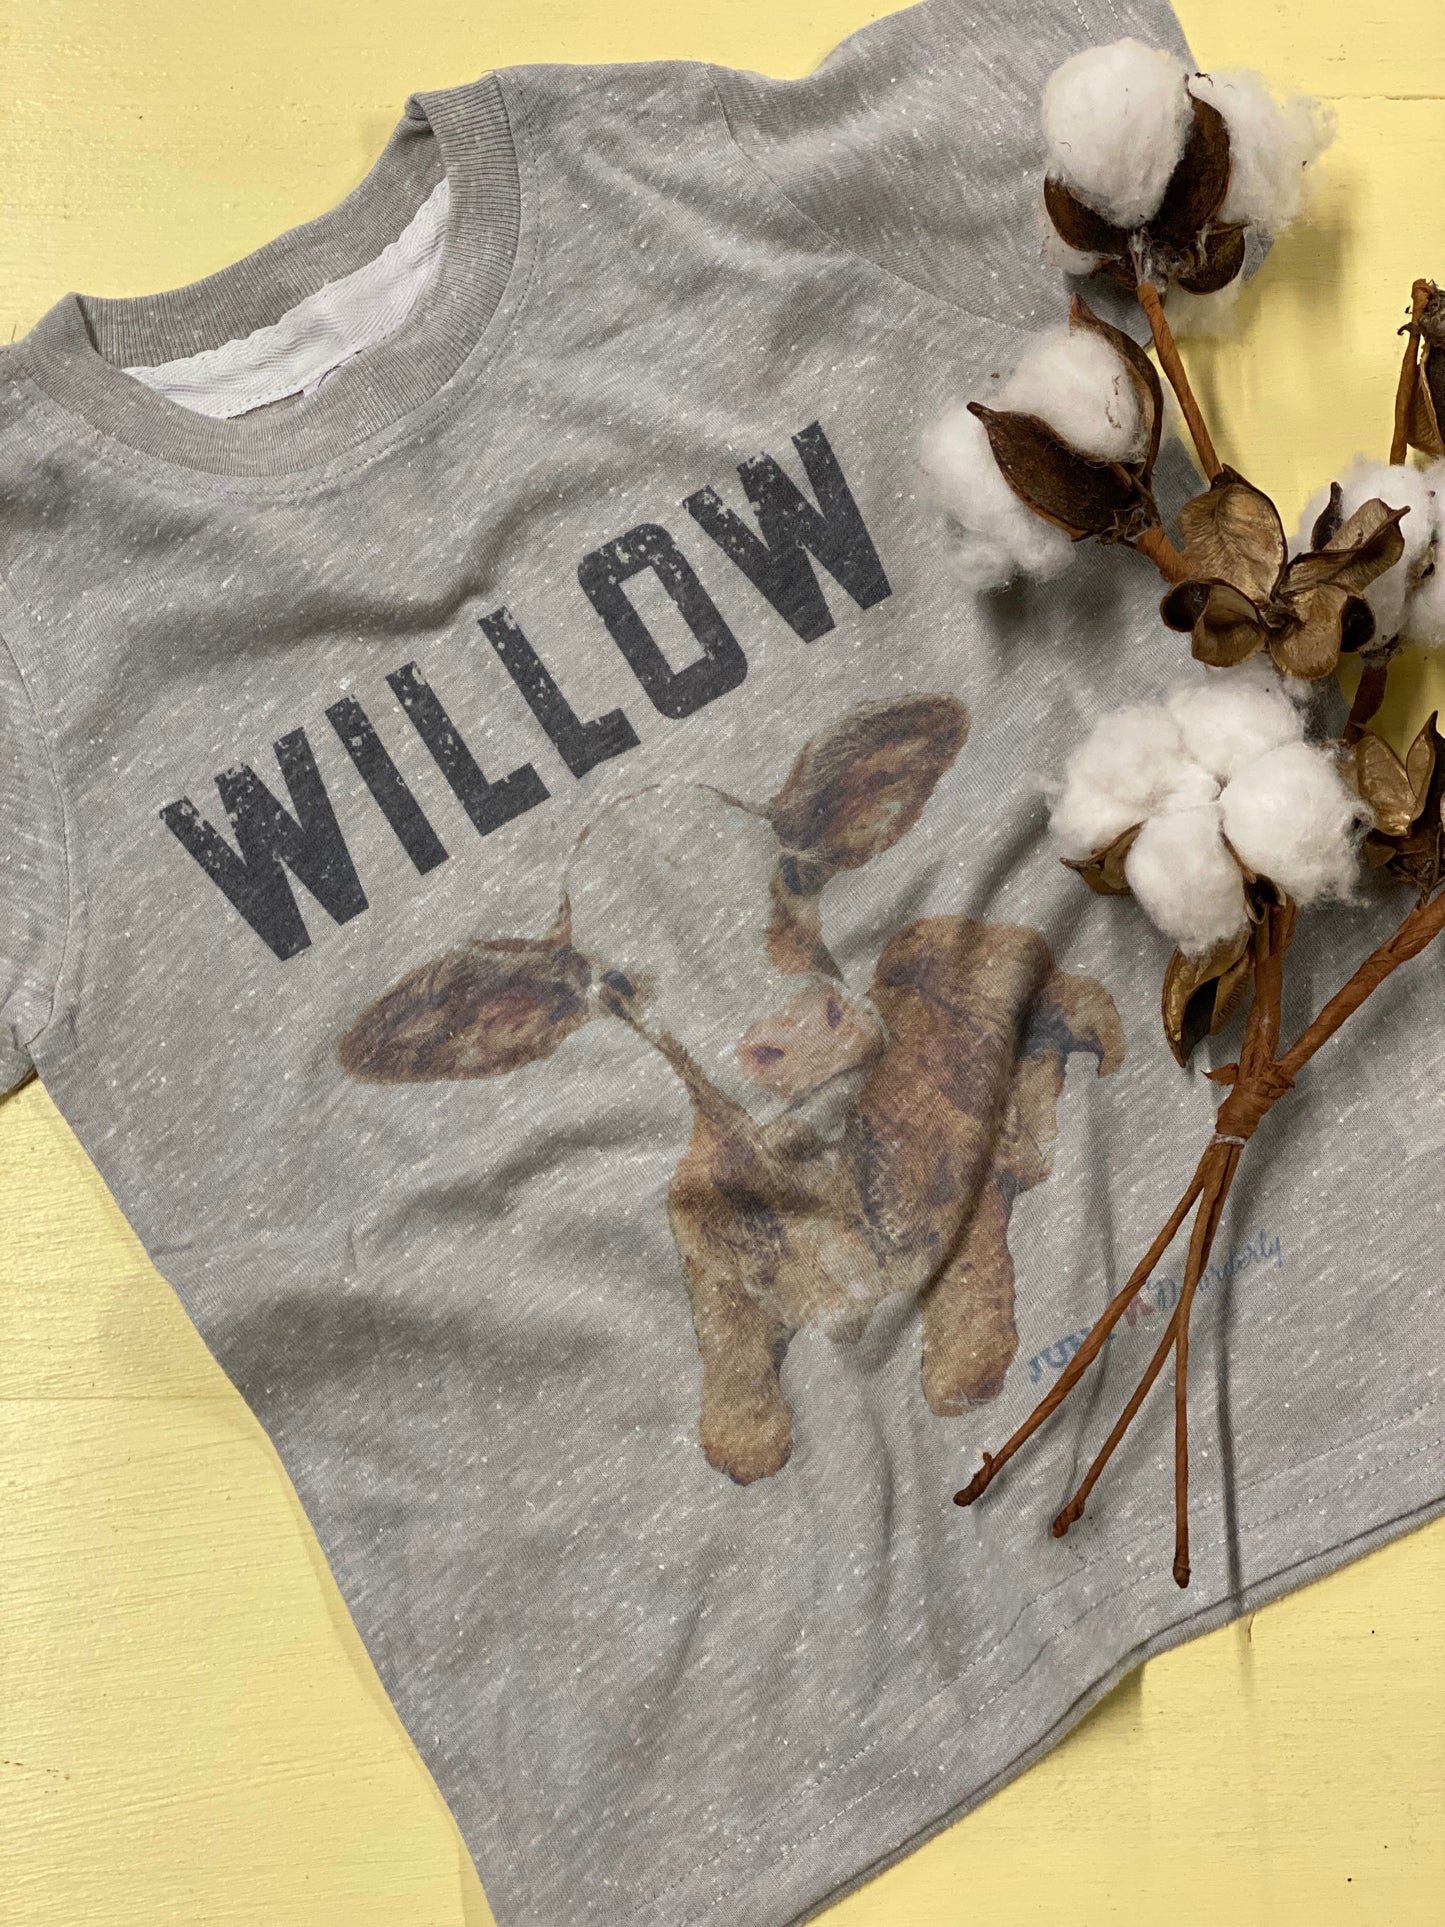 Willow T-Shirt